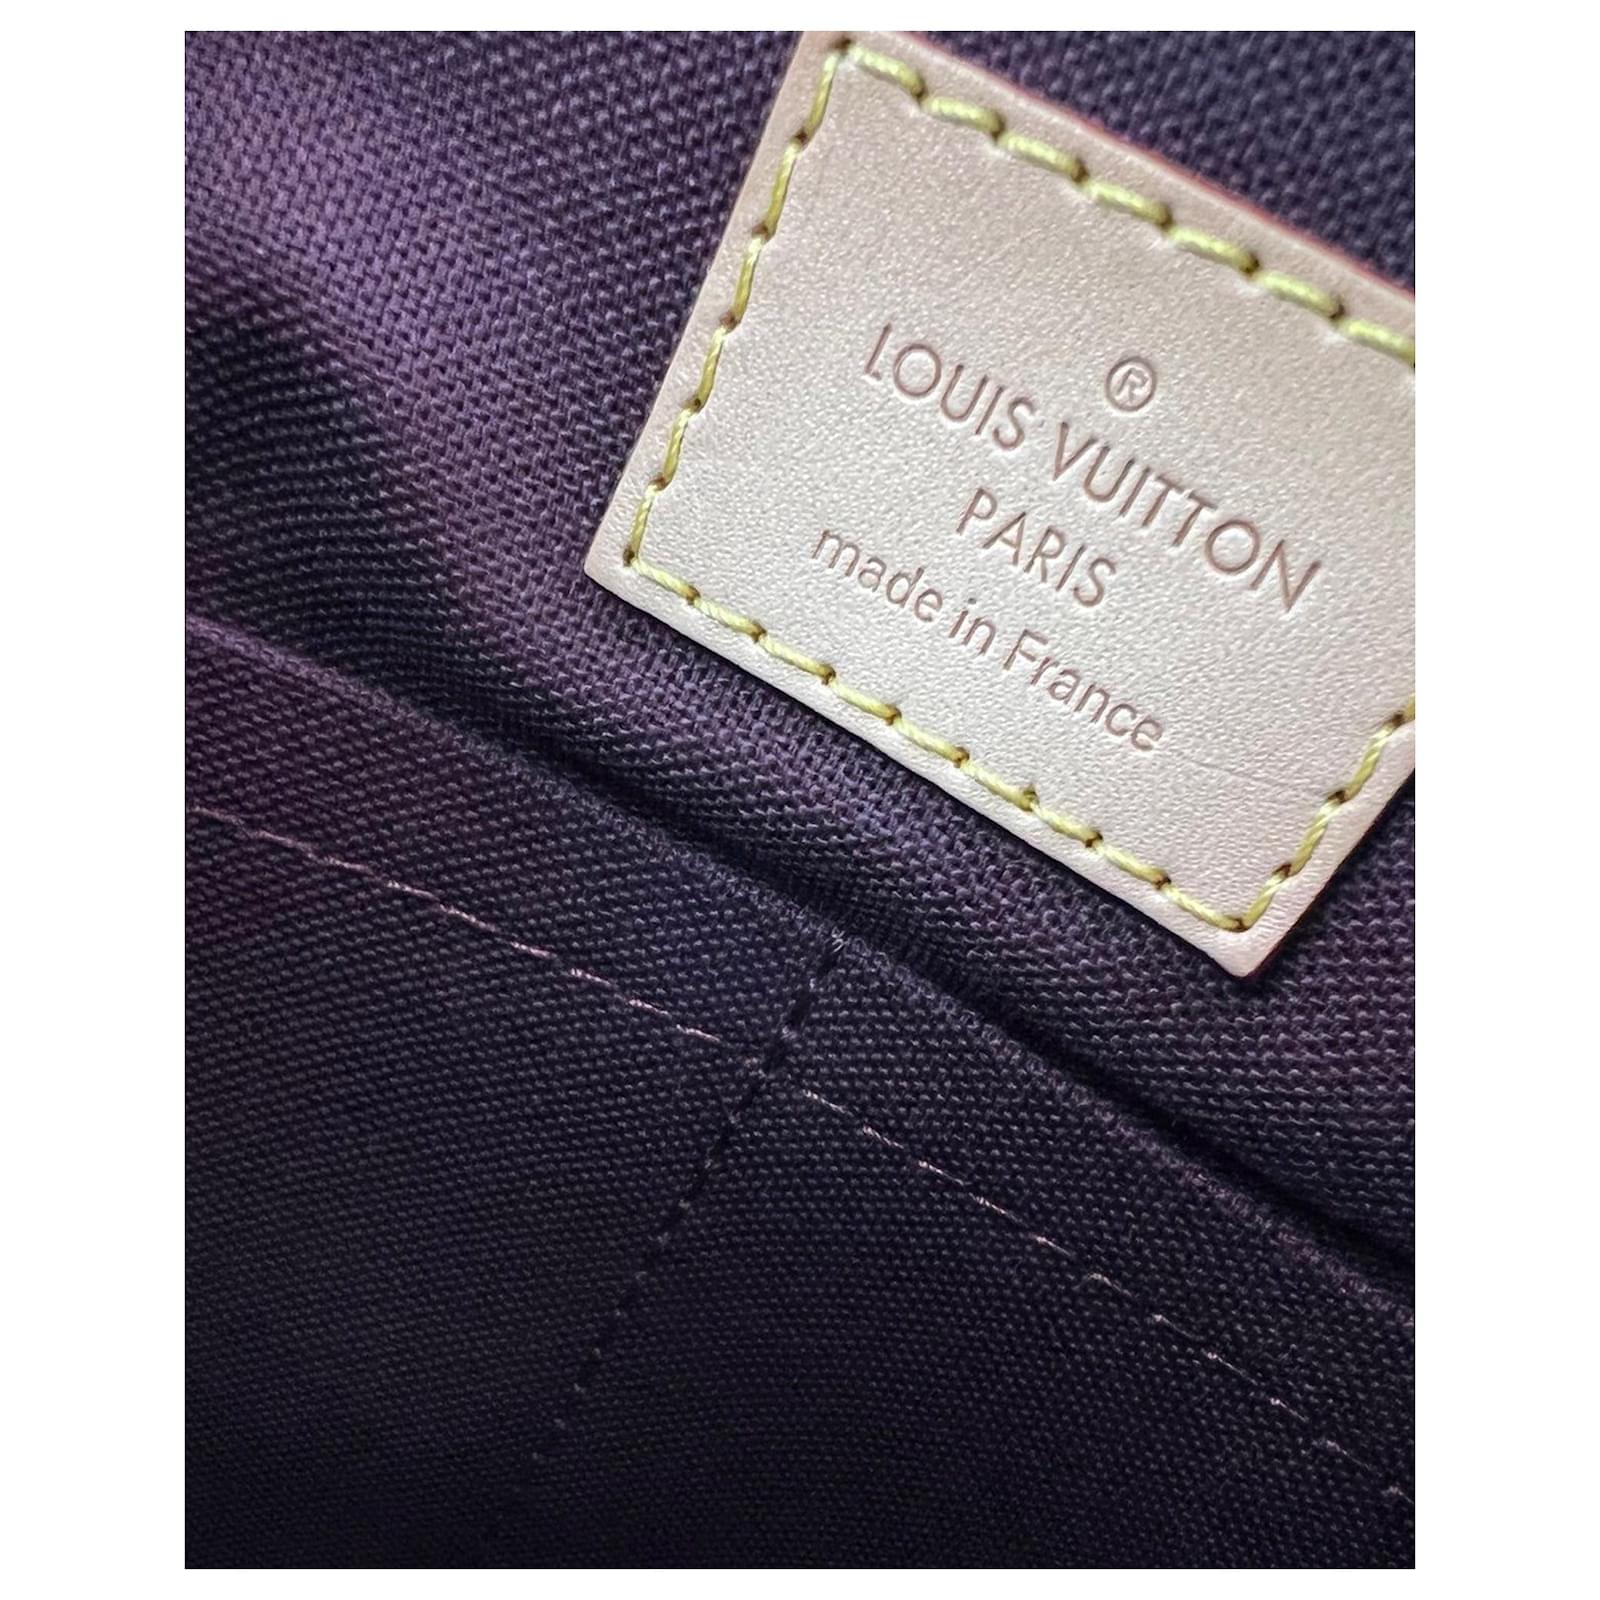 Authentic Louis Vuitton Monogram Turenne PM Satchel With DustBag & Long  Strap